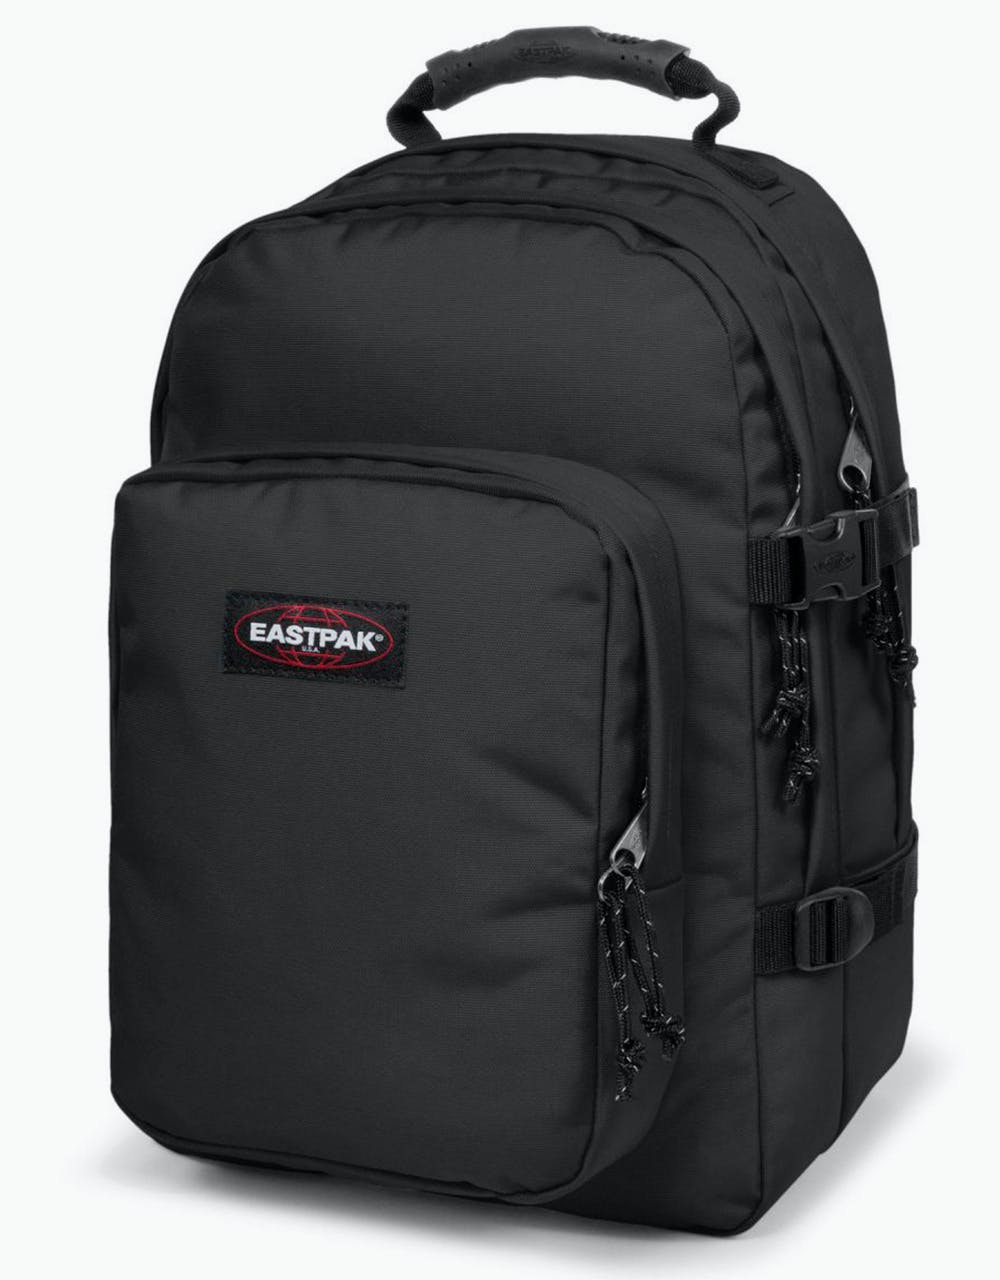 Eastpak Provider Backpack - Black